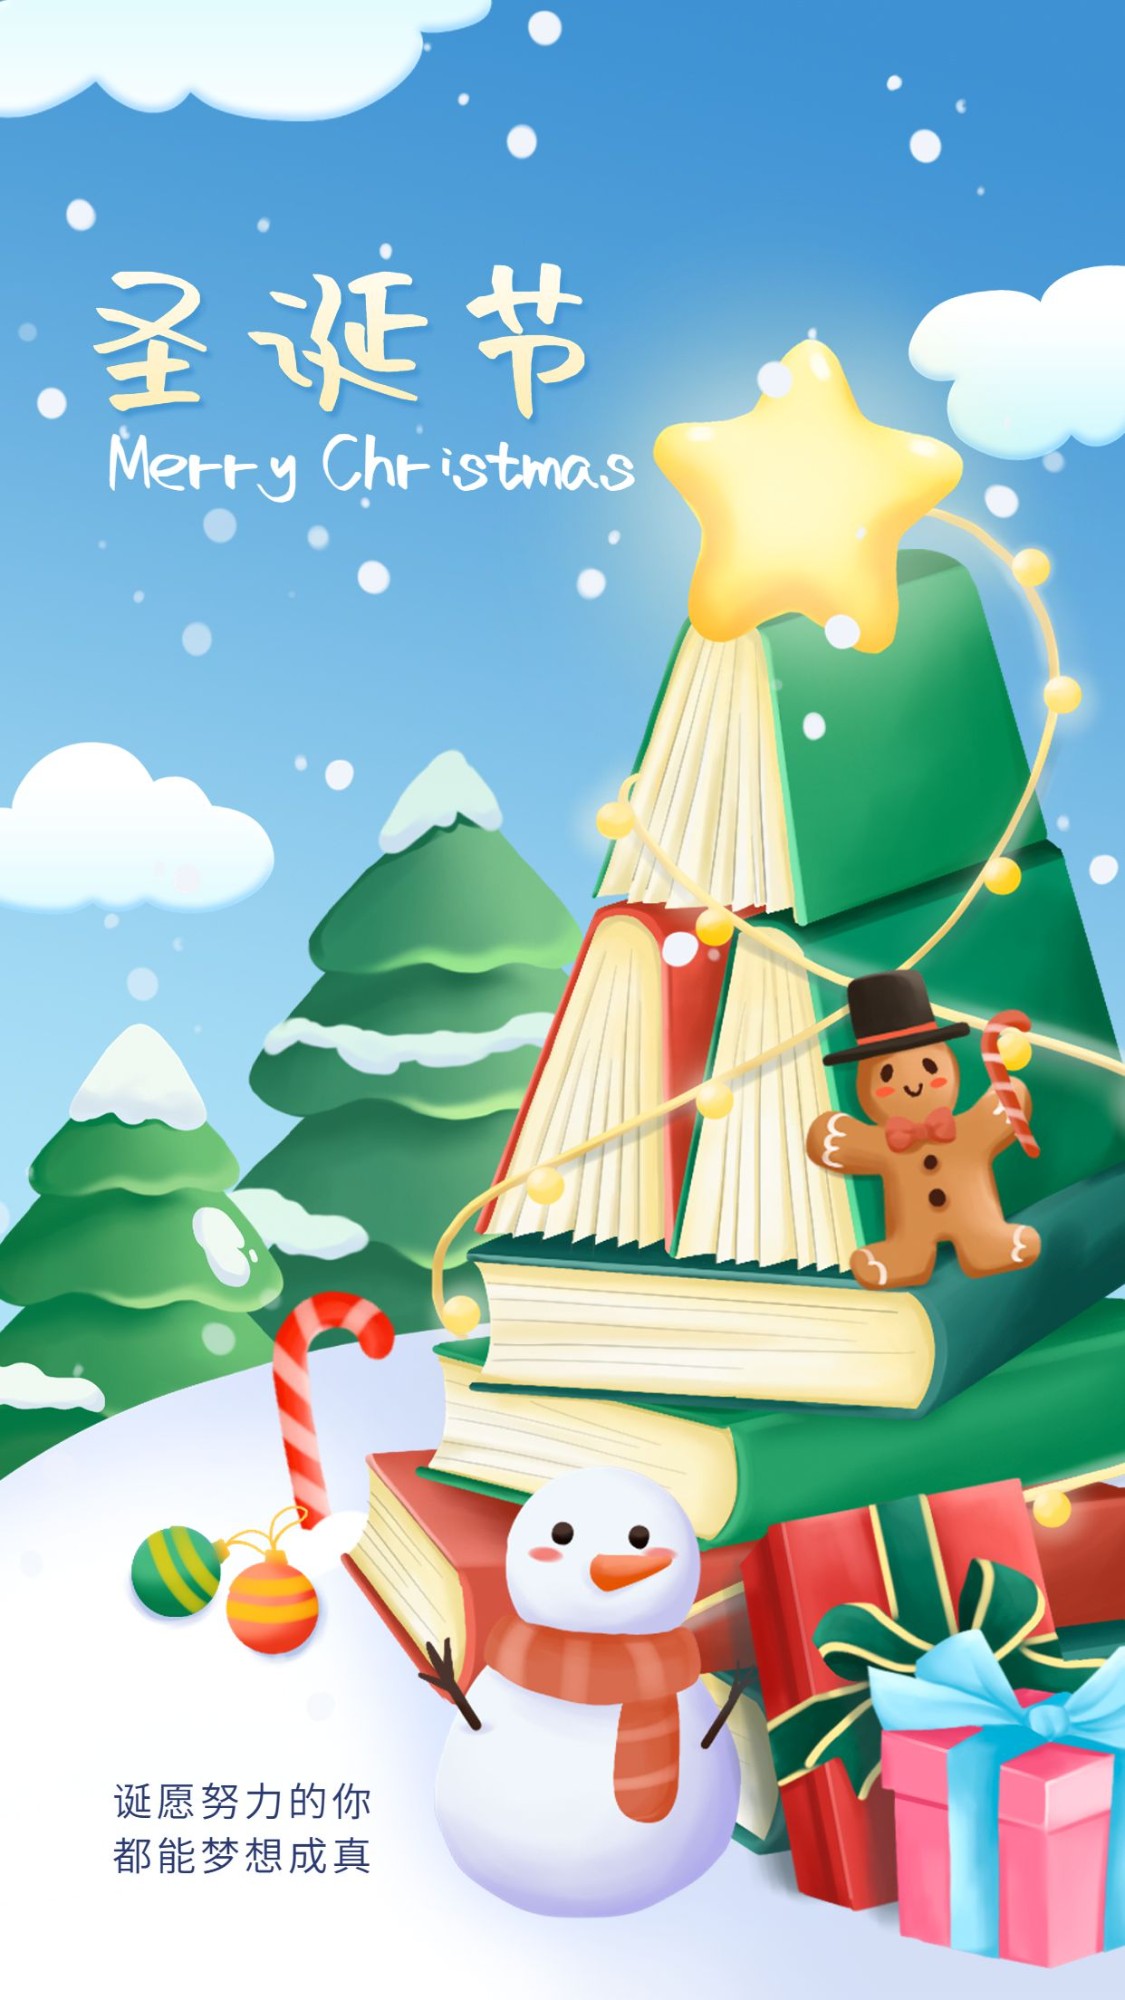 圣诞节教育行业祝福伪3D插画风格书本造型手机海报